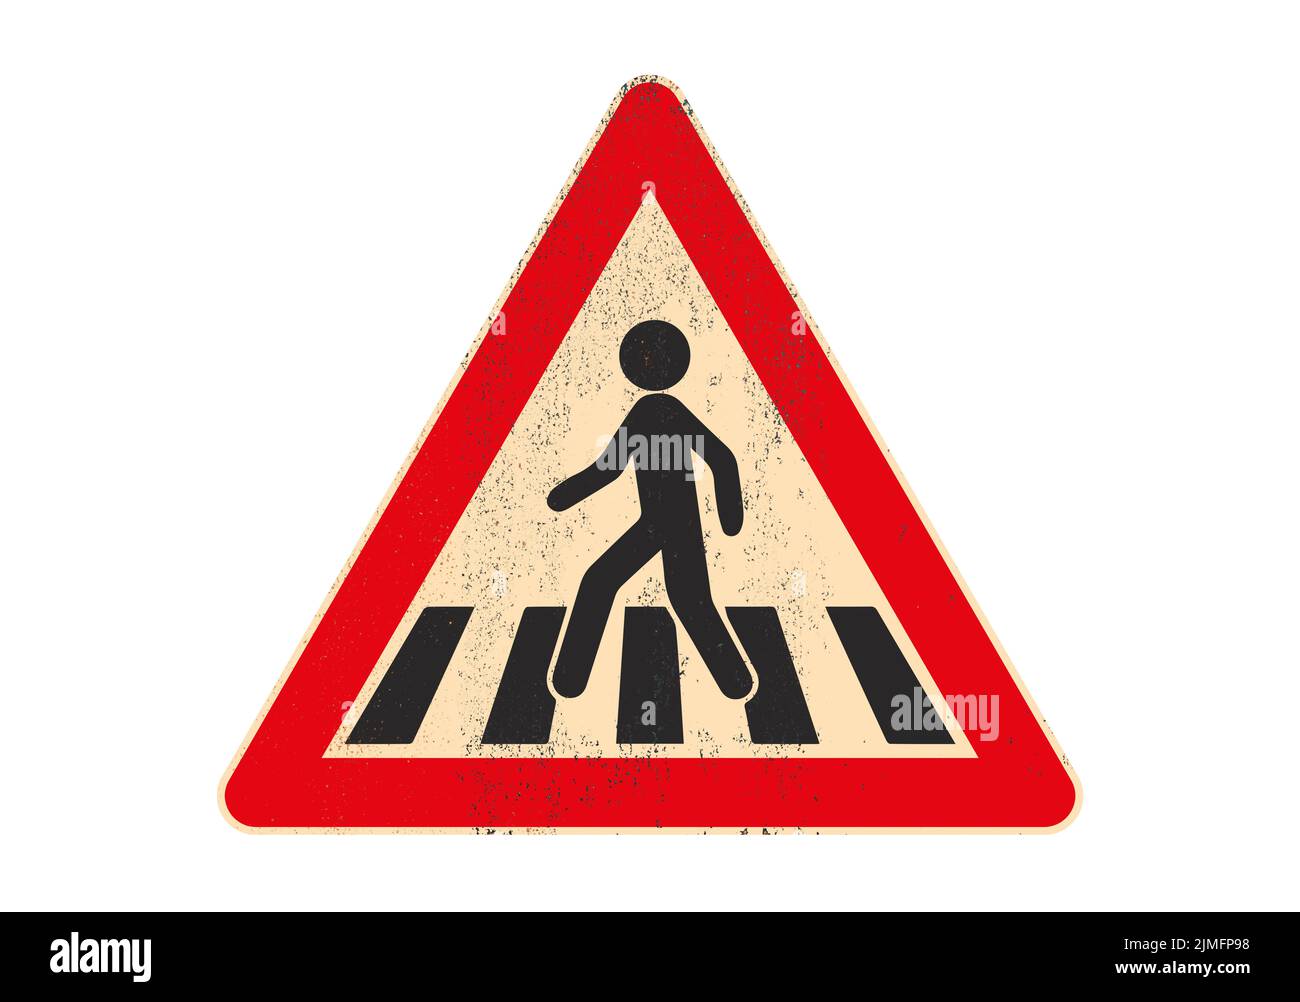 Señal de tráfico peatonal cruzando el símbolo sobre una placa de metal oxidada y grasienta aislada sobre fondo blanco. Ilustración de alta calidad Foto de stock